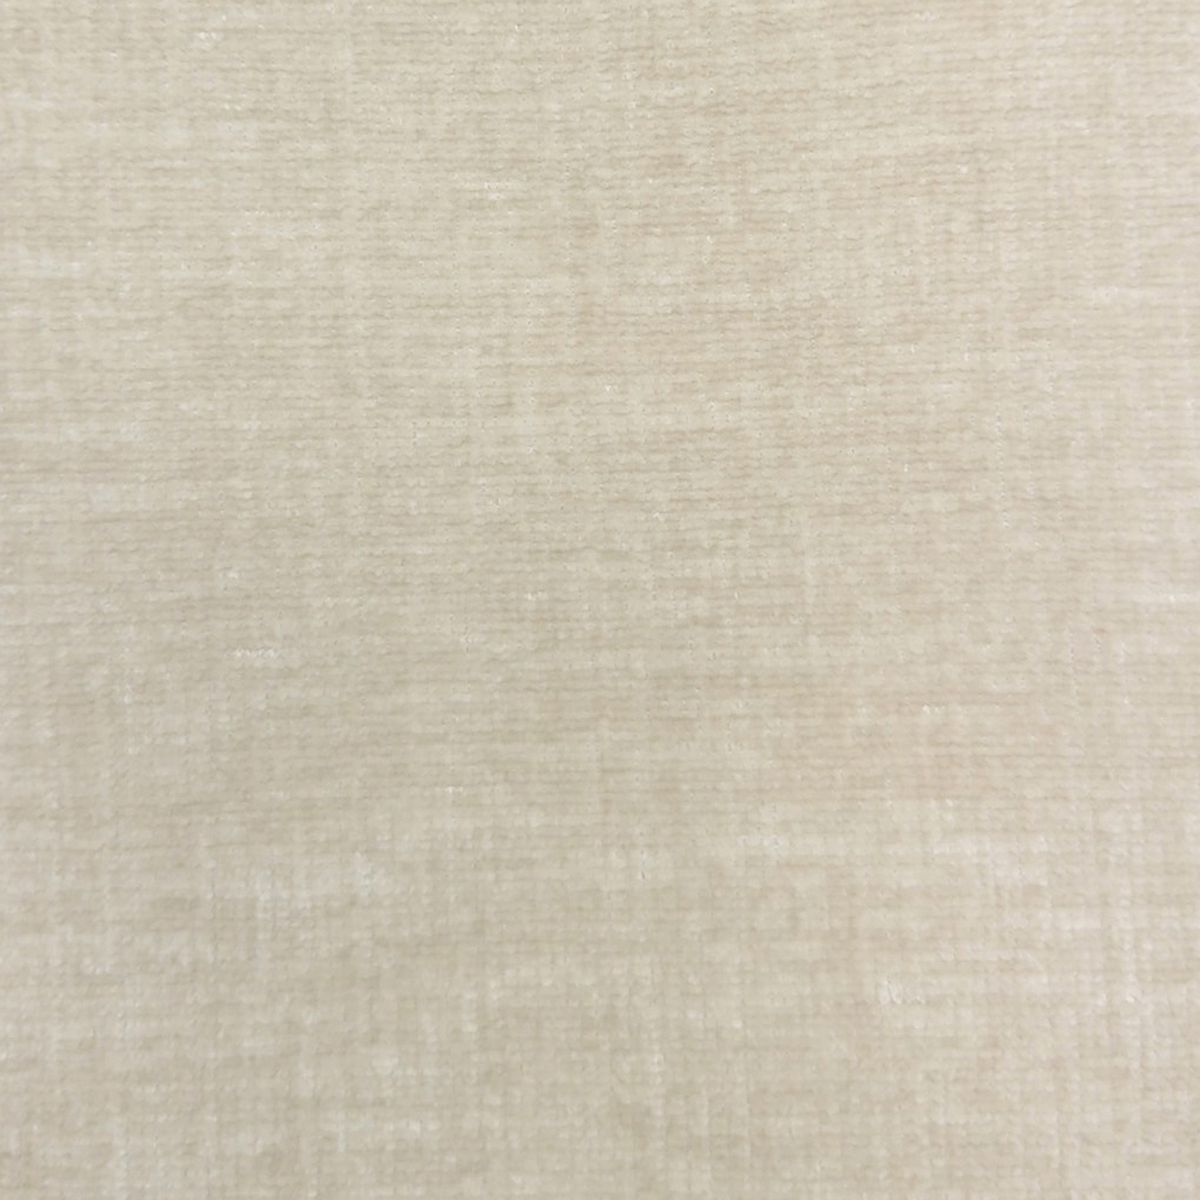 Isernia Ivory Velvet Fabric by Voyage Maison